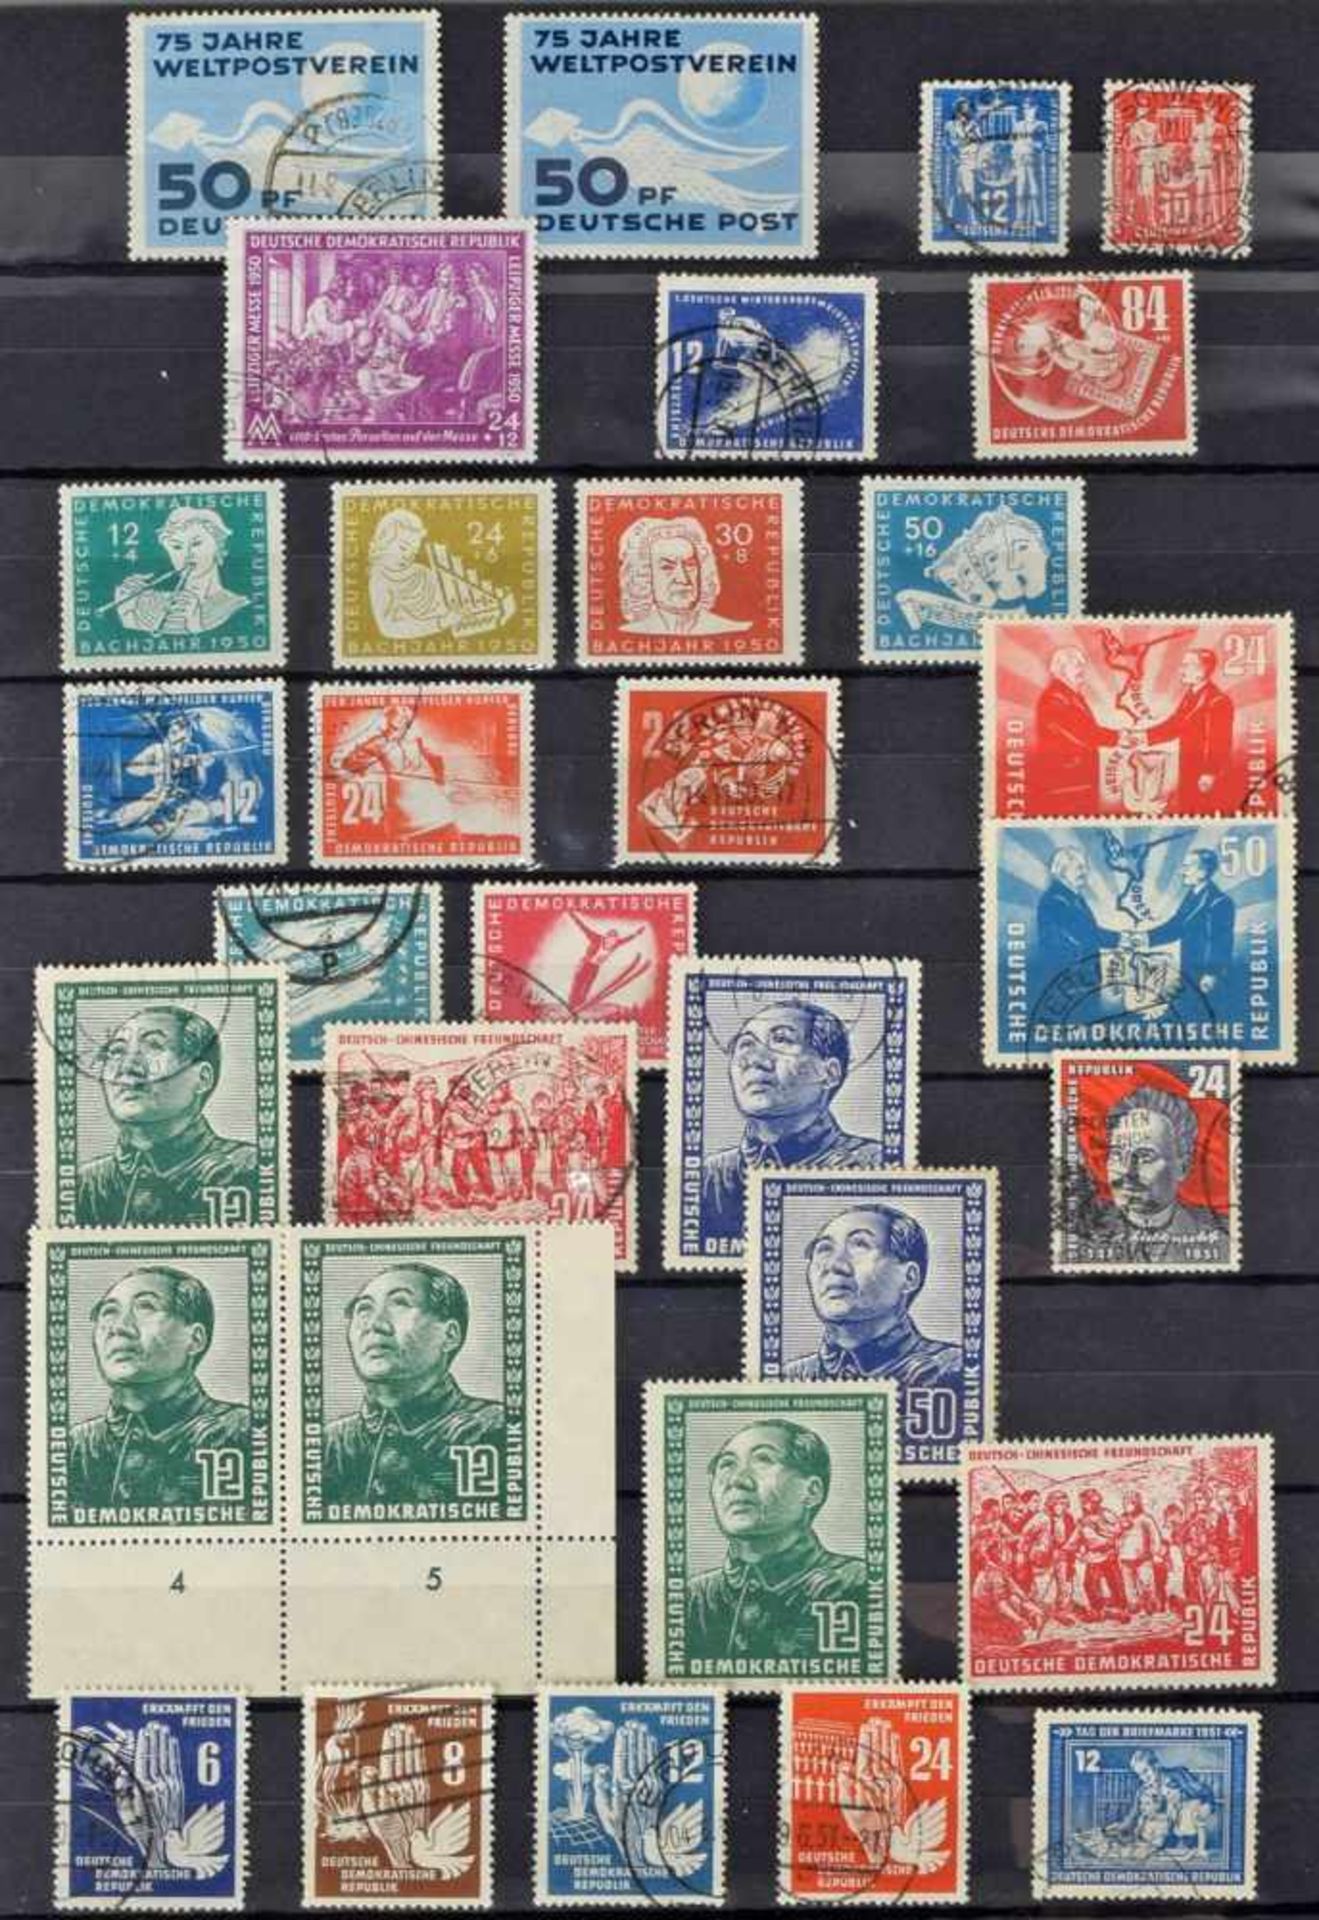 Auswahl Briefmarken Anfangsjahre DDR Auswahl ca. 1949-1955, dabei u.a.: Mi.-Nr. 242 (=DDR Nr. 1) " - Bild 2 aus 2